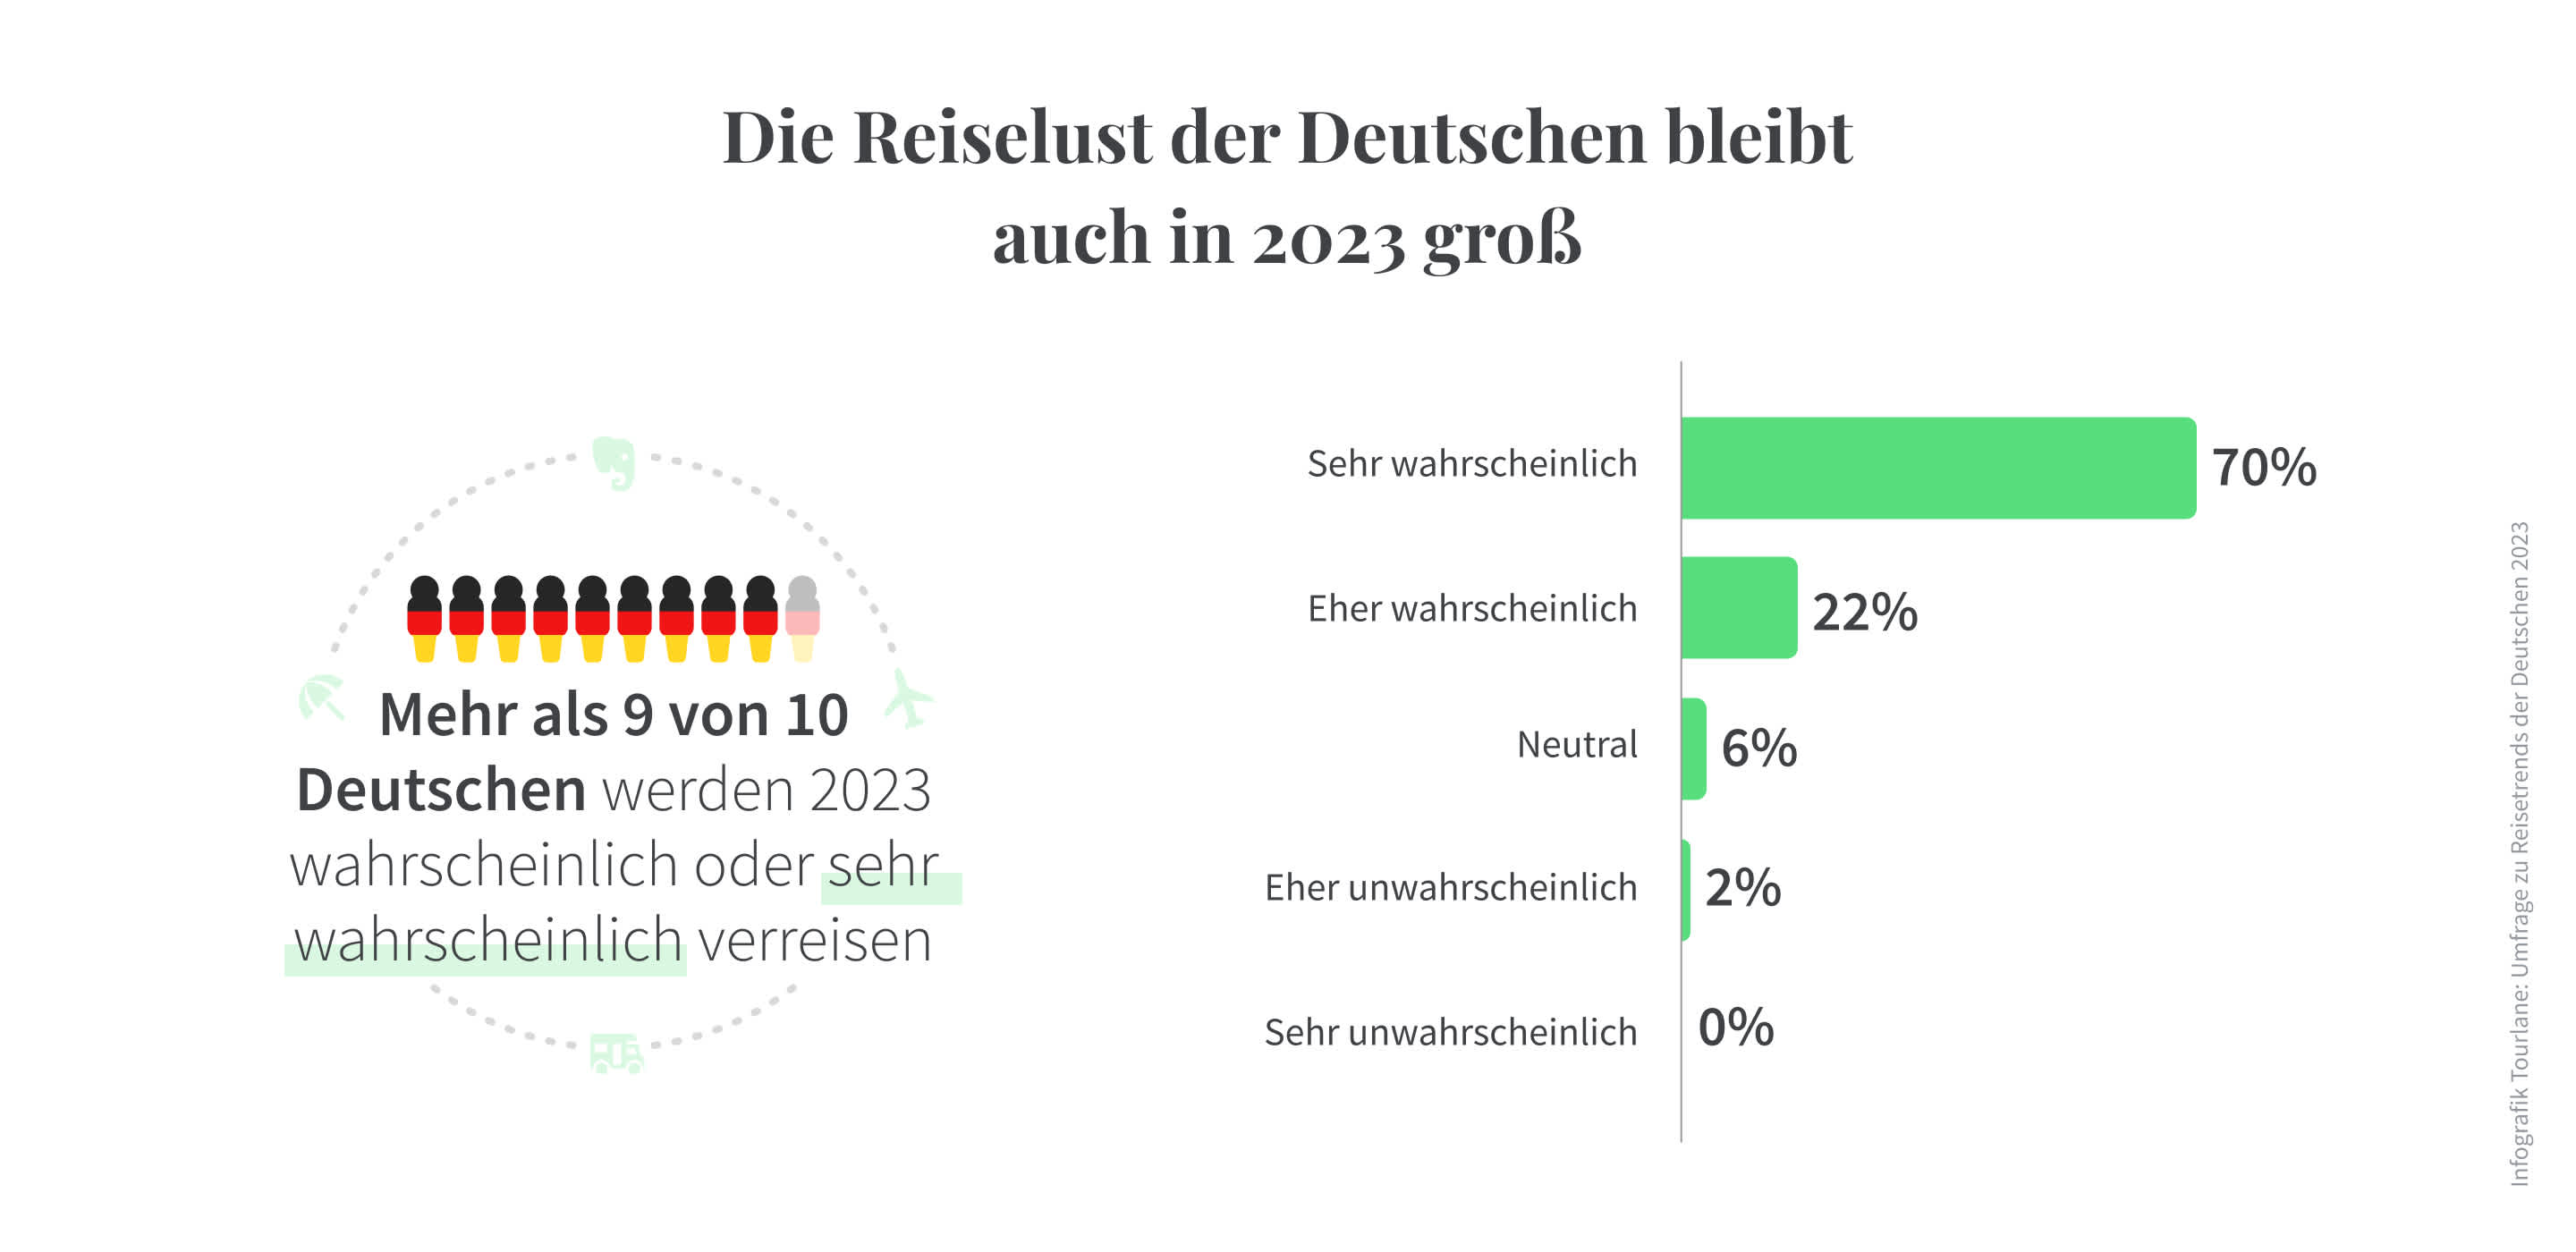 Die meisten Deutschen wollen 2023 reisen